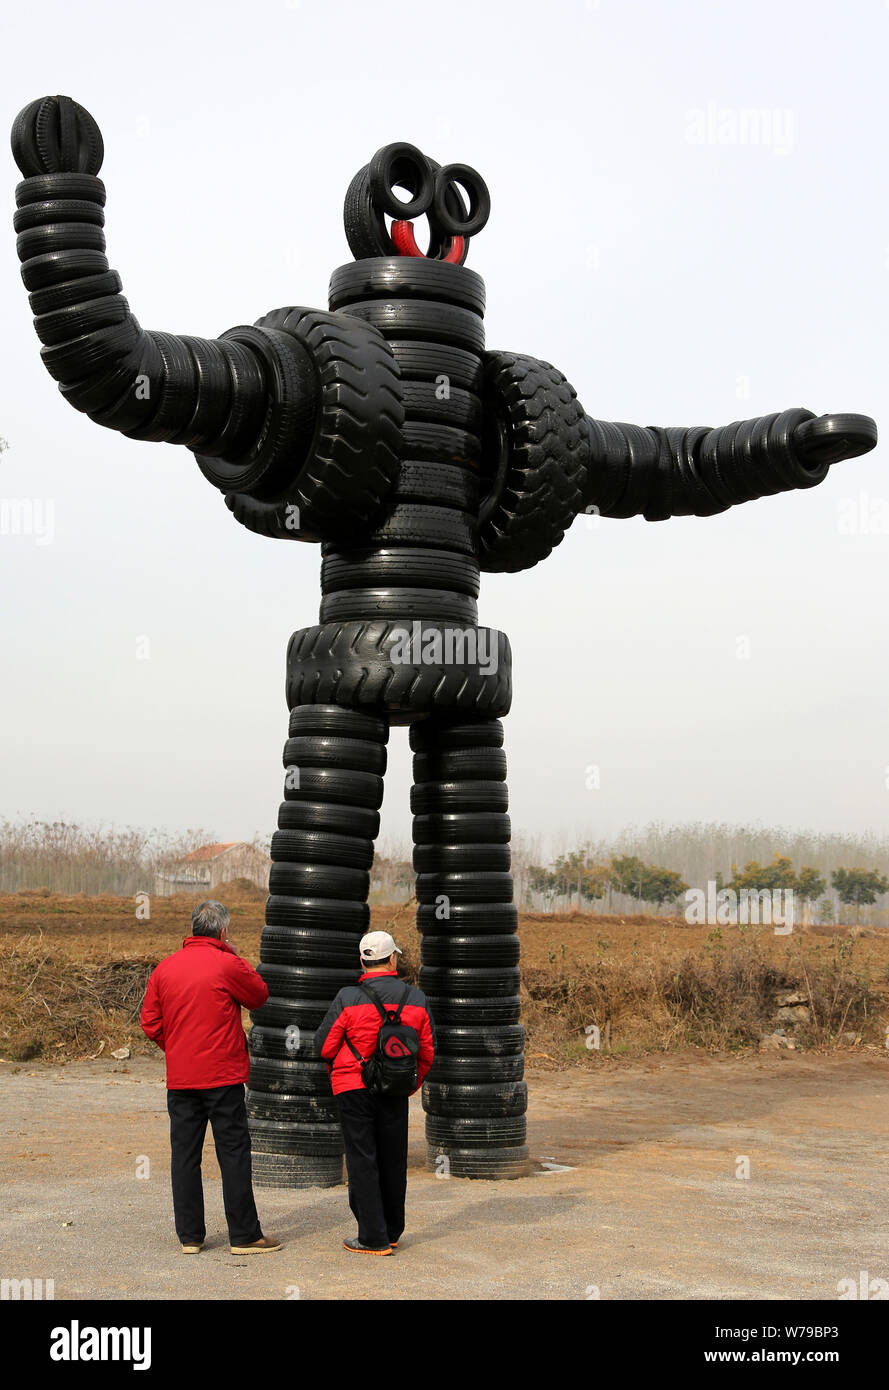 Les visiteurs regarder une sculpture de pneu à un parc de sculptures des pneus à Zaozhuang City, Shandong province de Chine orientale, le 19 novembre 2017. Touristes ont visité un t Banque D'Images